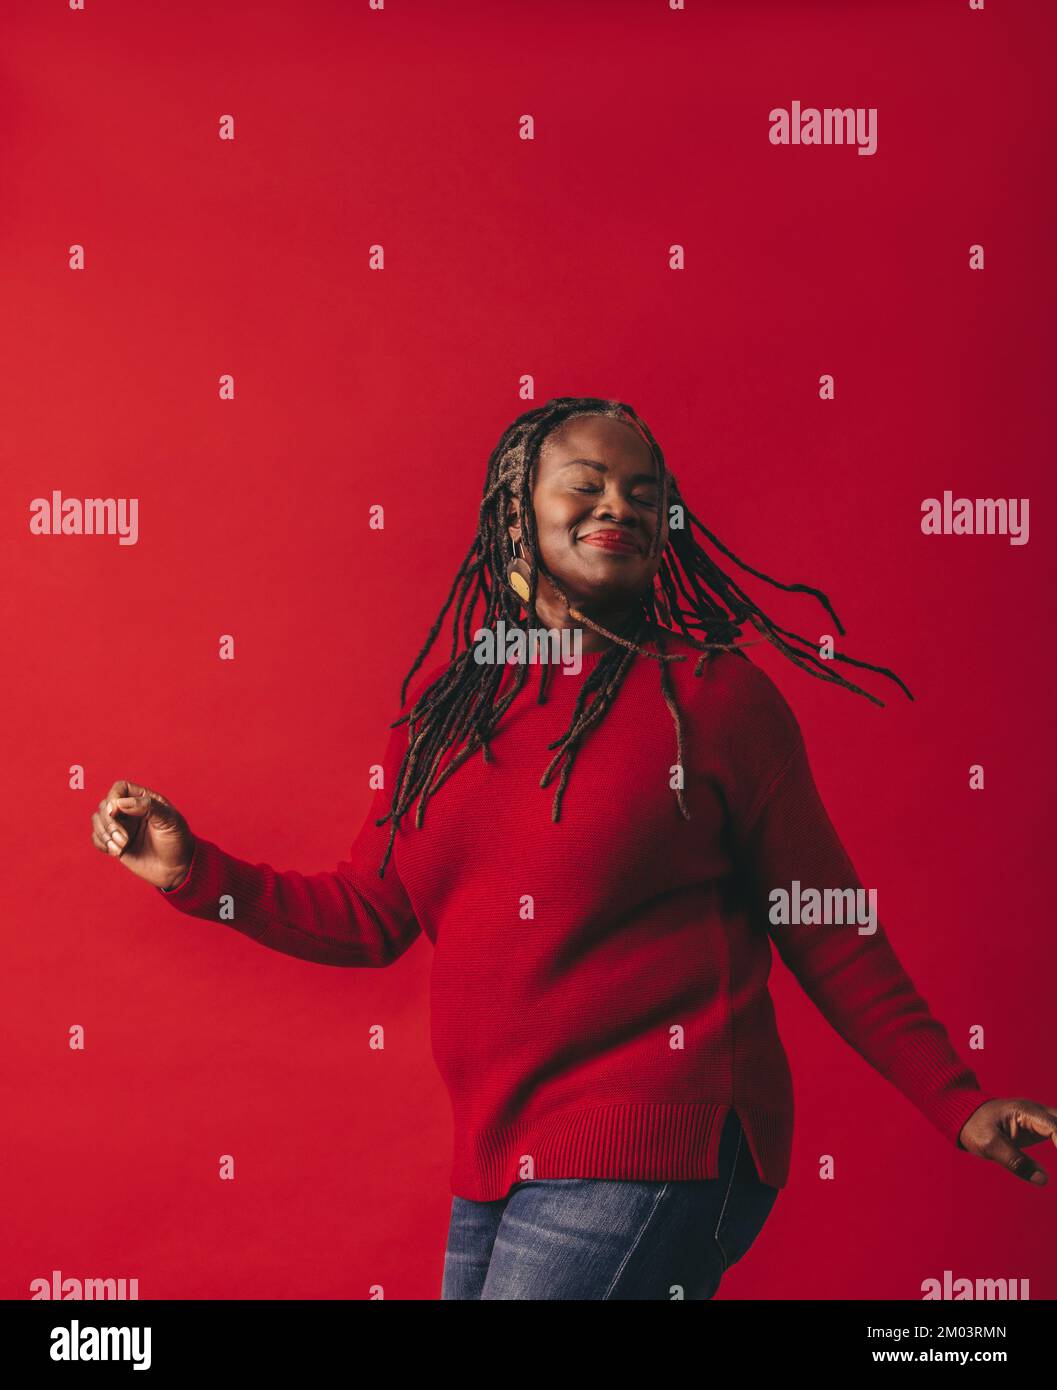 Fröhliche schwarze Frau tanzt und peitscht ihre Dreadlocks, während sie vor einem roten Hintergrund steht. Glückliche reife Frau, die Spaß hat und ihre Natura umarmt Stockfoto